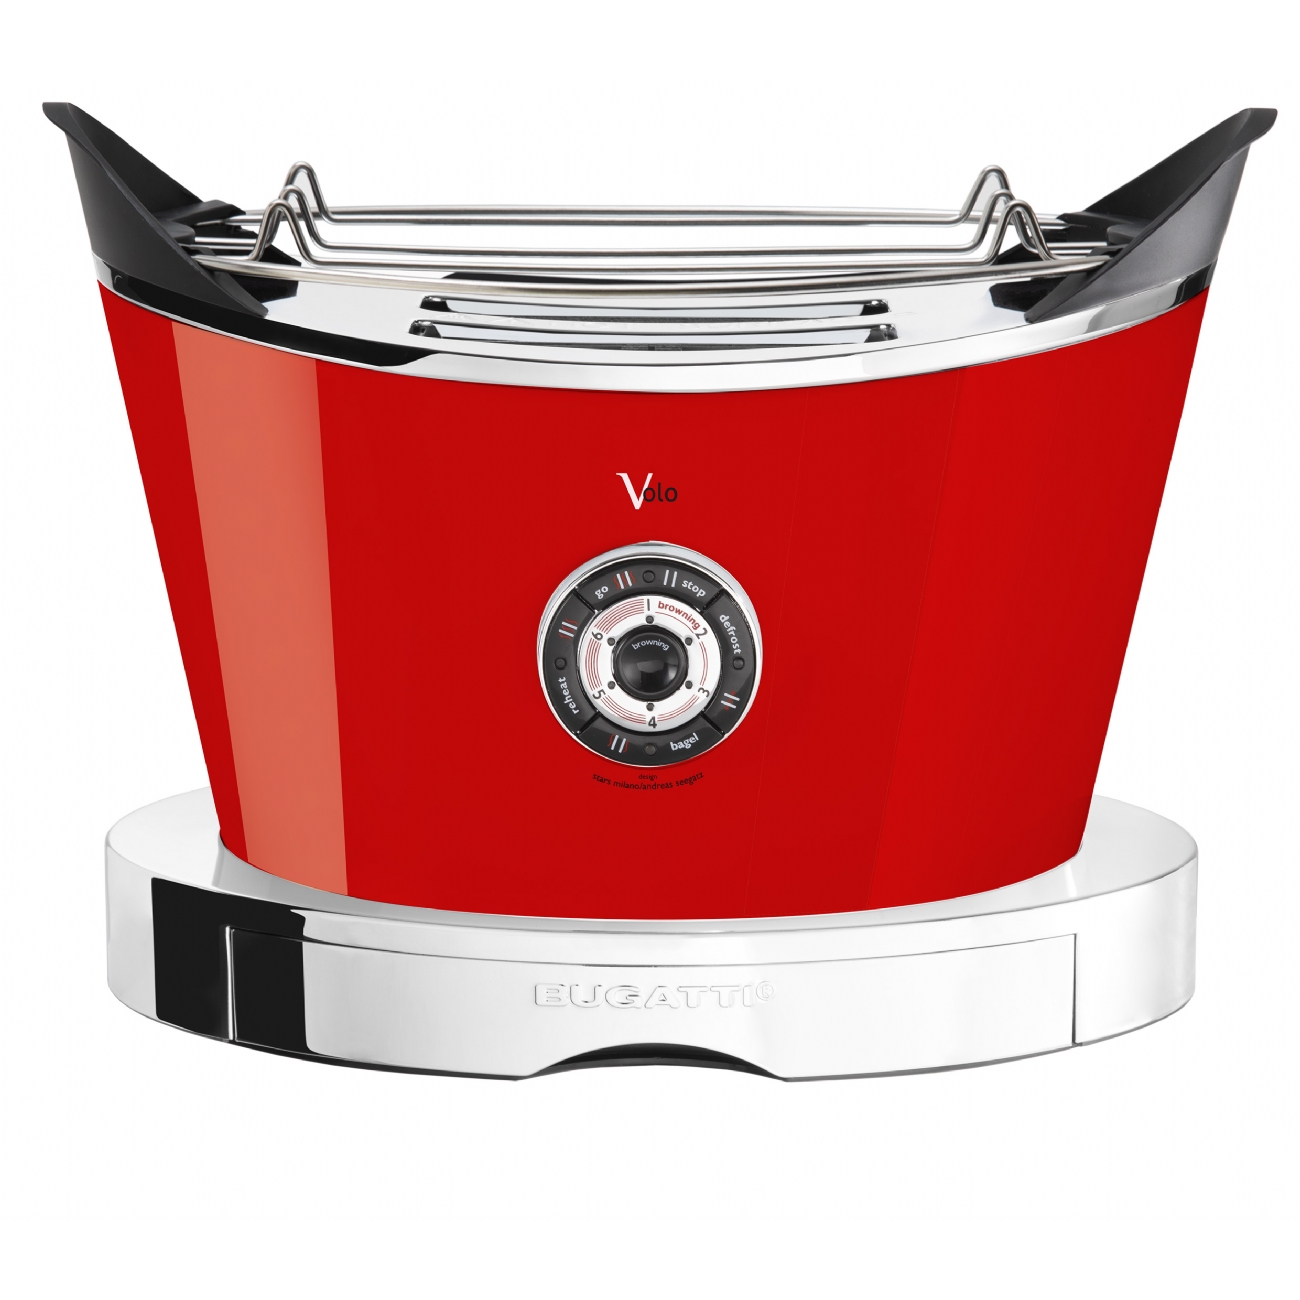 Bugatti - Volo Toaster - Red (13-VOLOC)